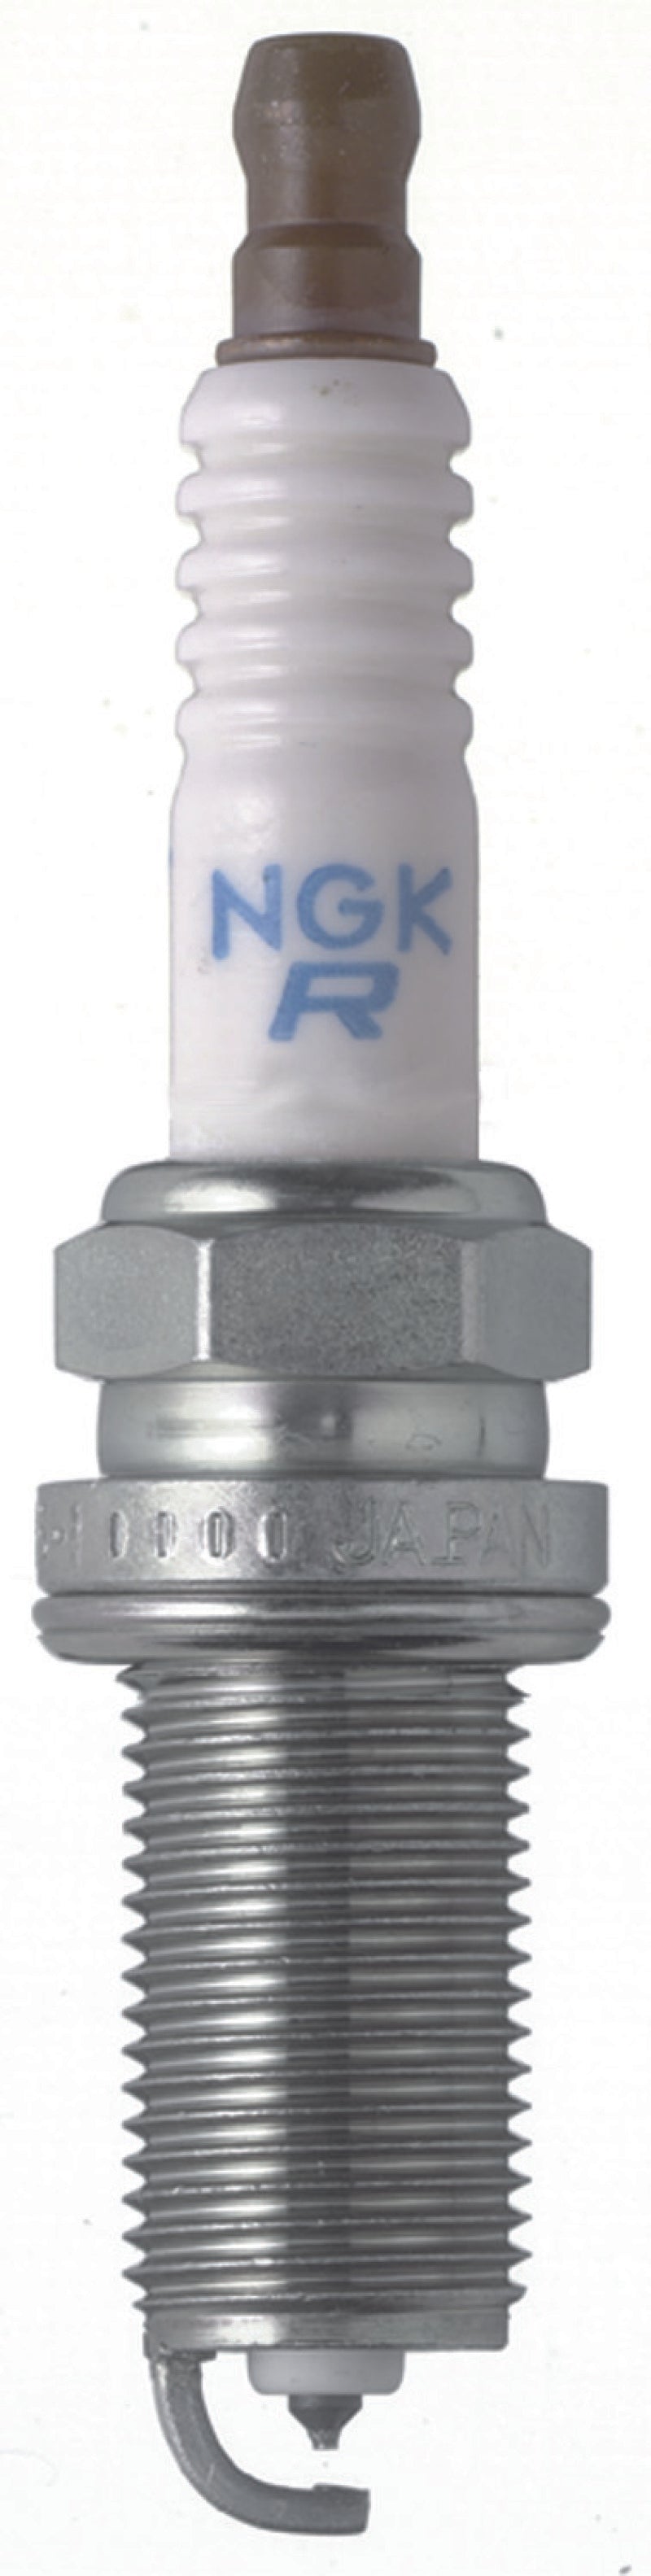 NGK Laser Platinum Spark Plug Box of 4 (PLFR5A-11)